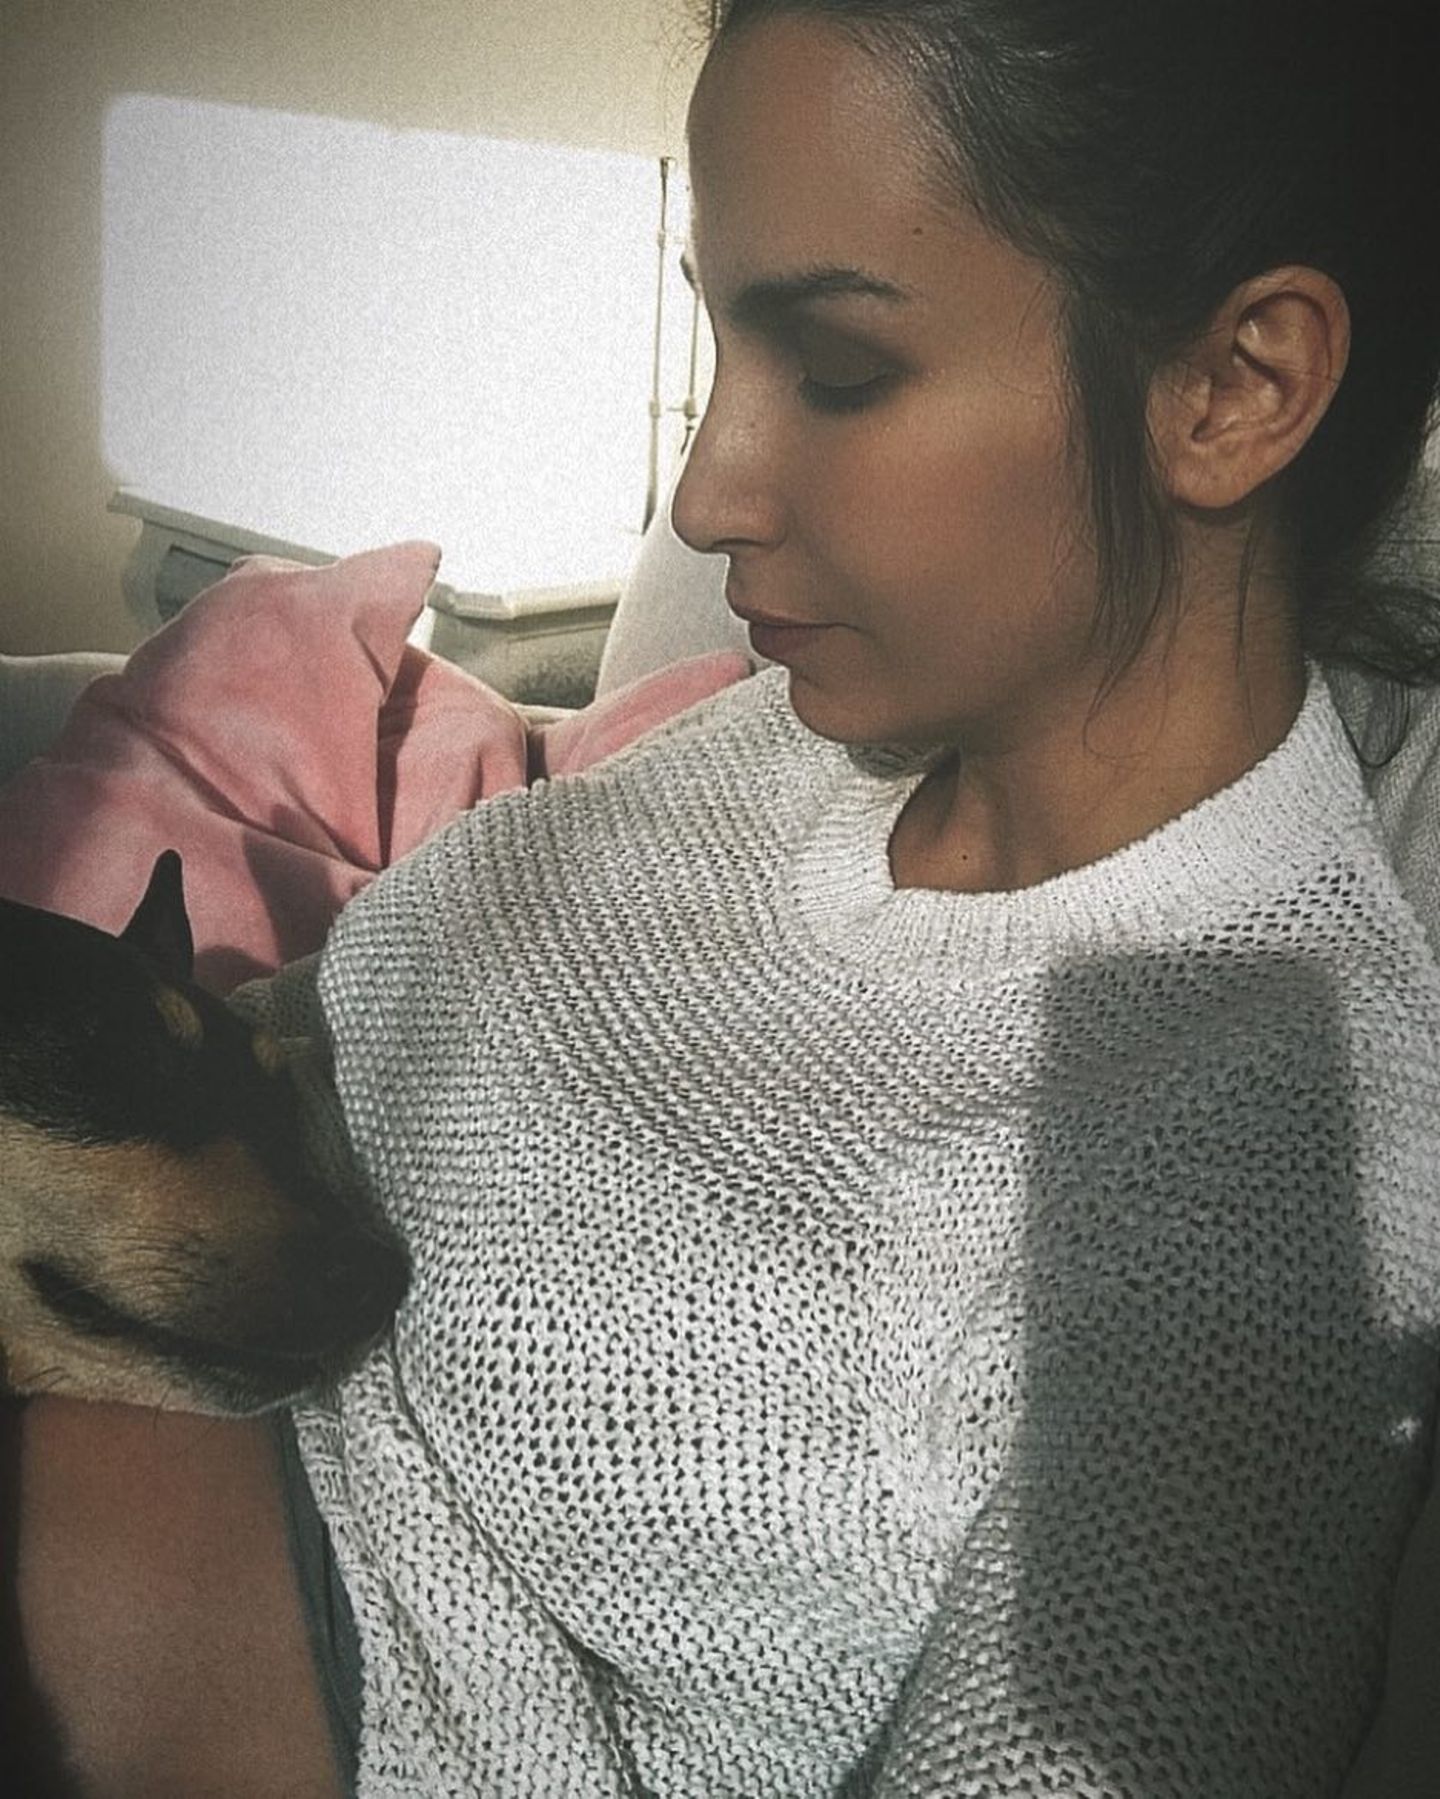 17. April 2018   "Gigi lauscht", postet Sila Sahin über ihren liebenswürdigen Vierbeiner, der gerade ein Ohr auf ihre Babykugel legt.